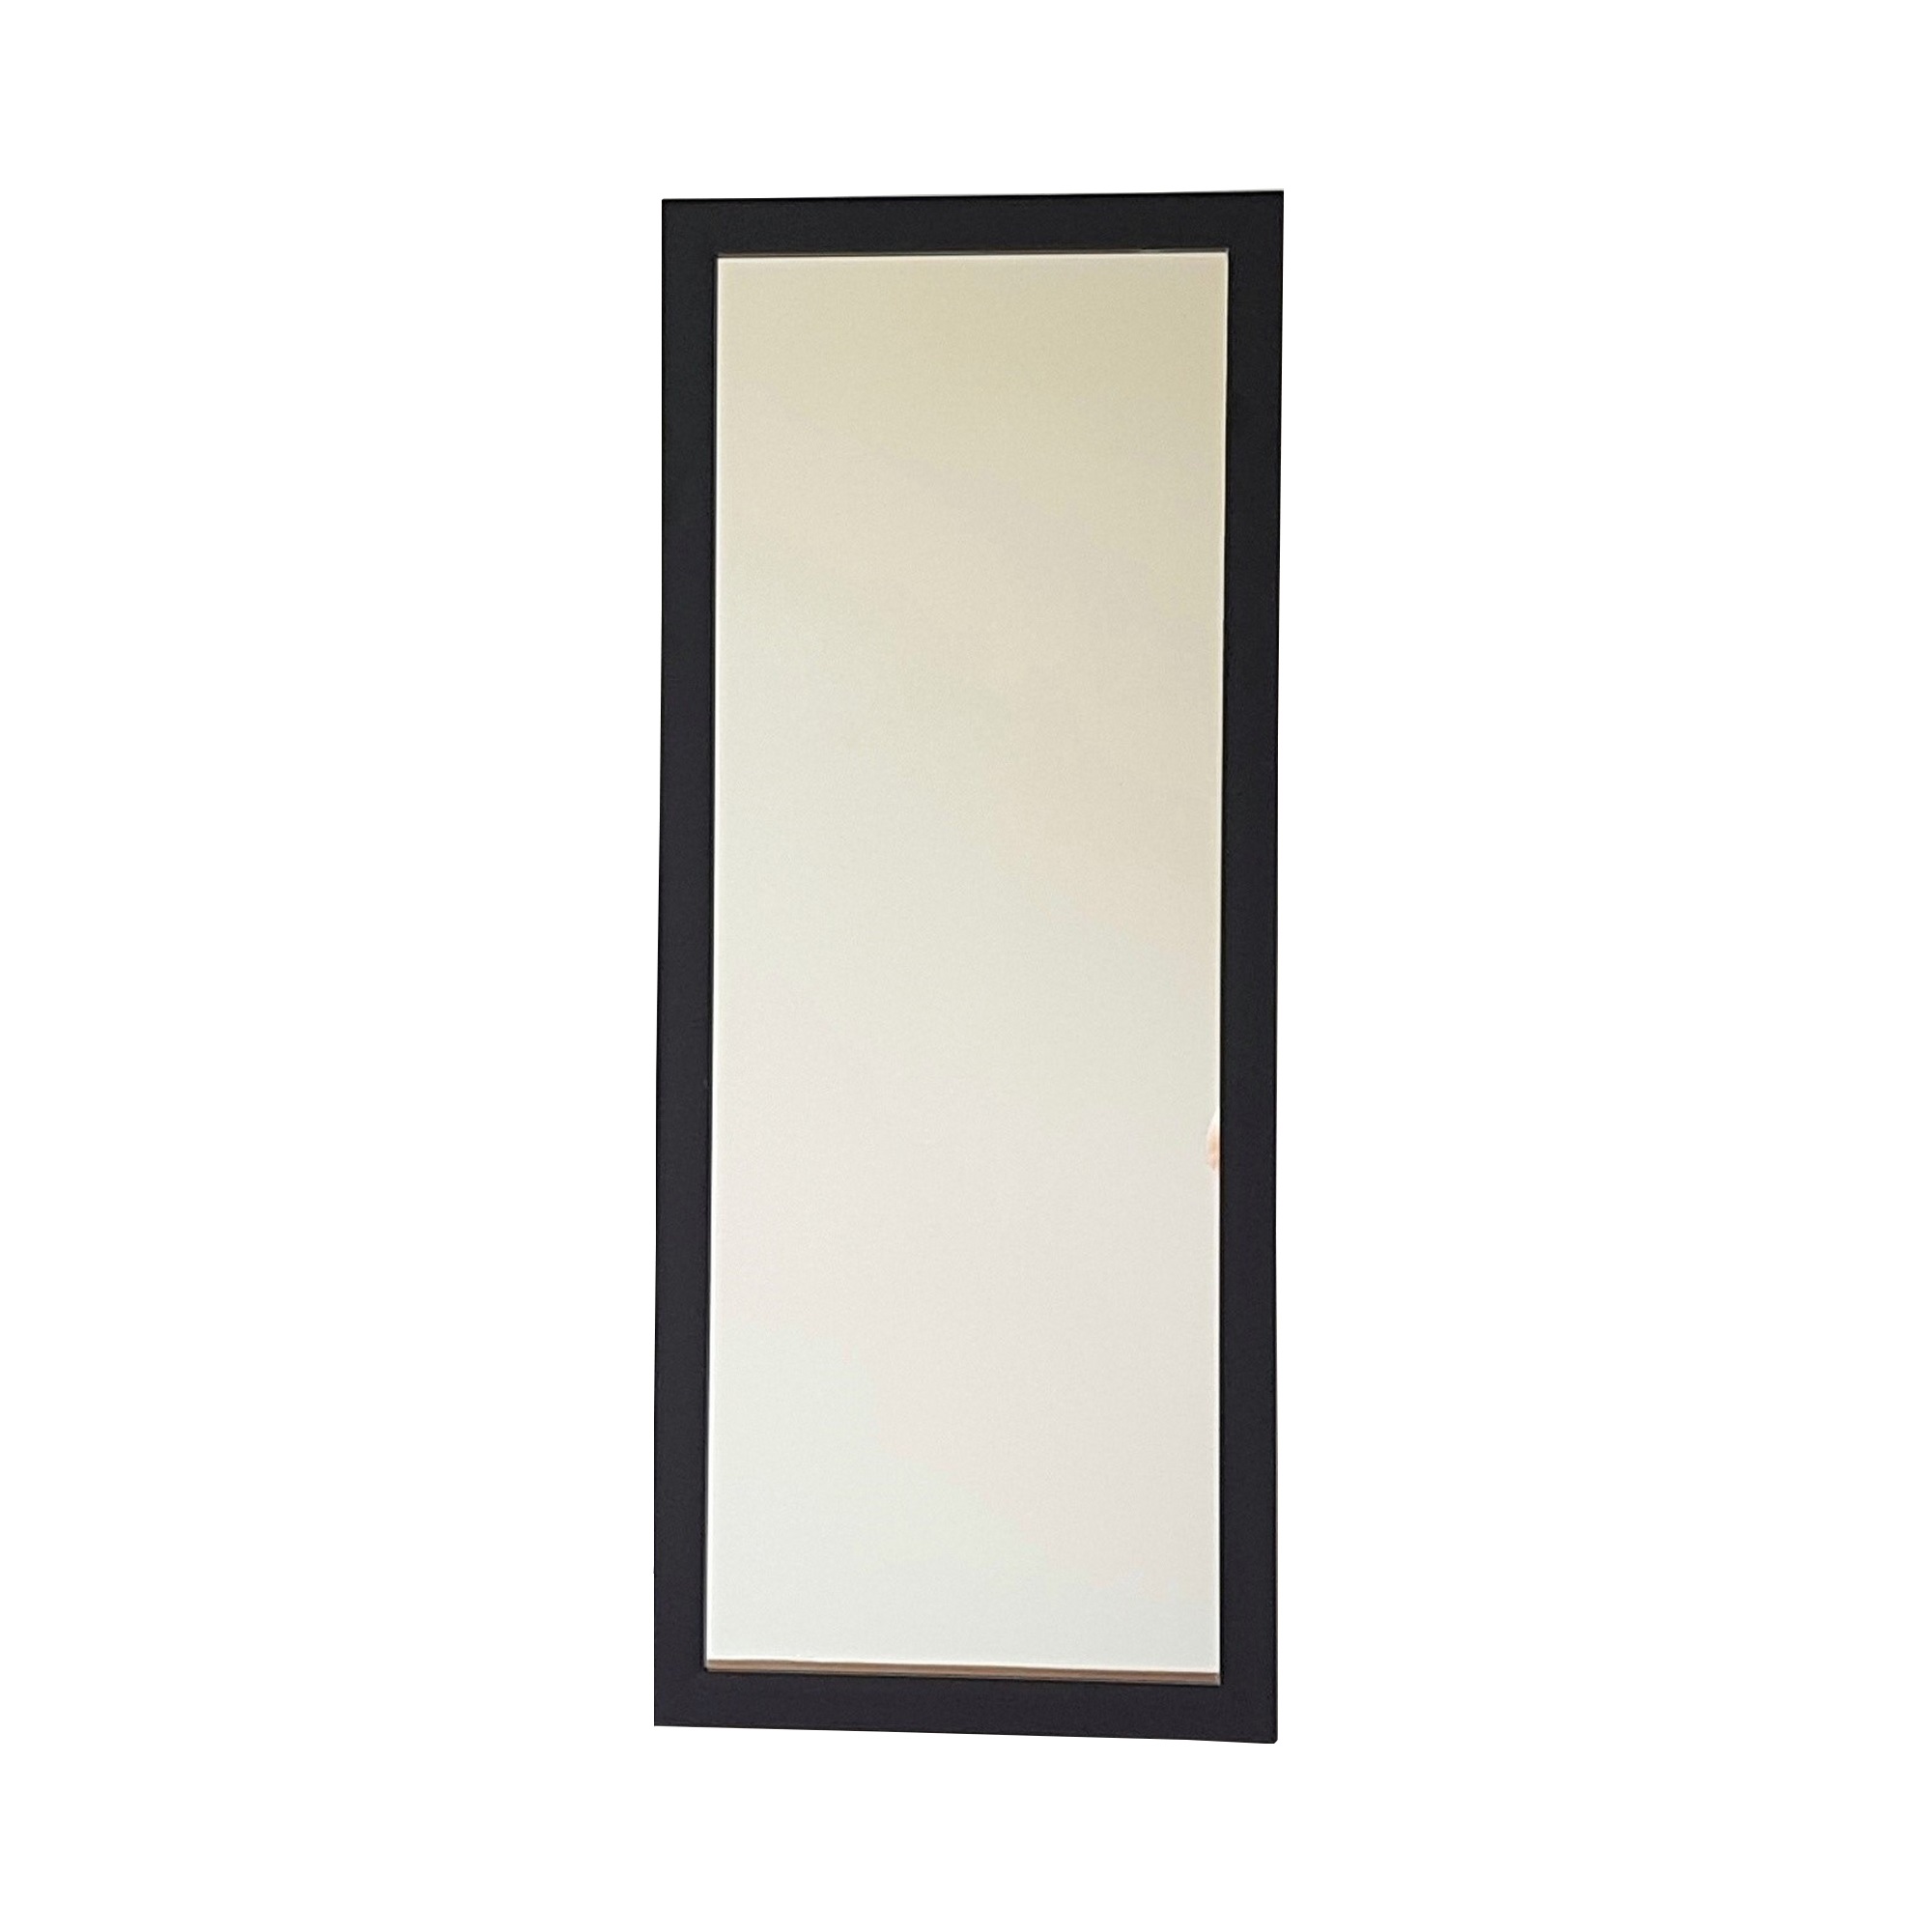 A205 Decorative Mirror